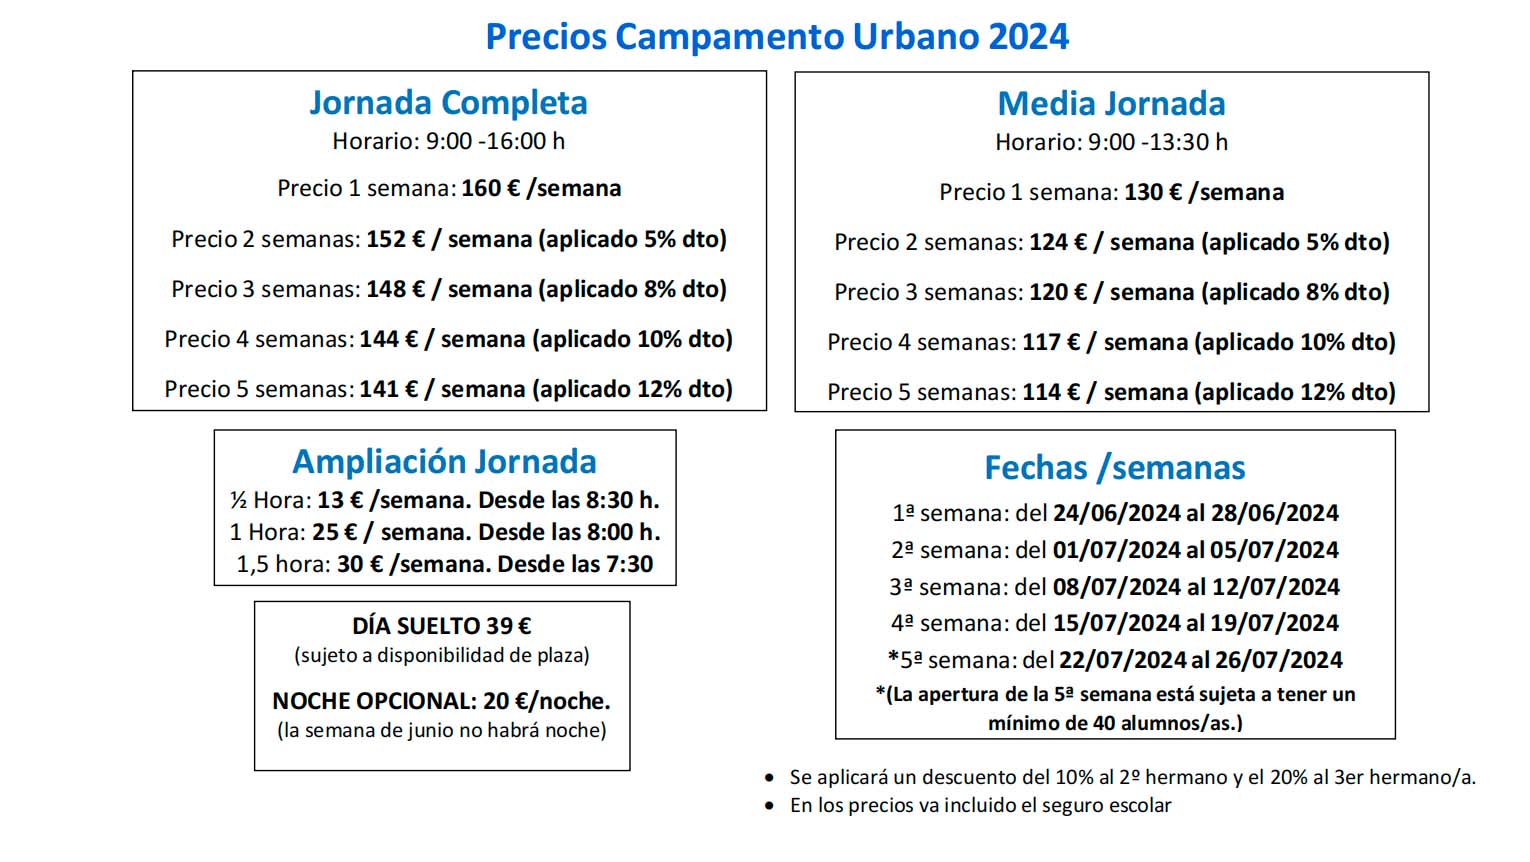 Precio del Campamento Urbano 2024 colegio Juan de Valdés